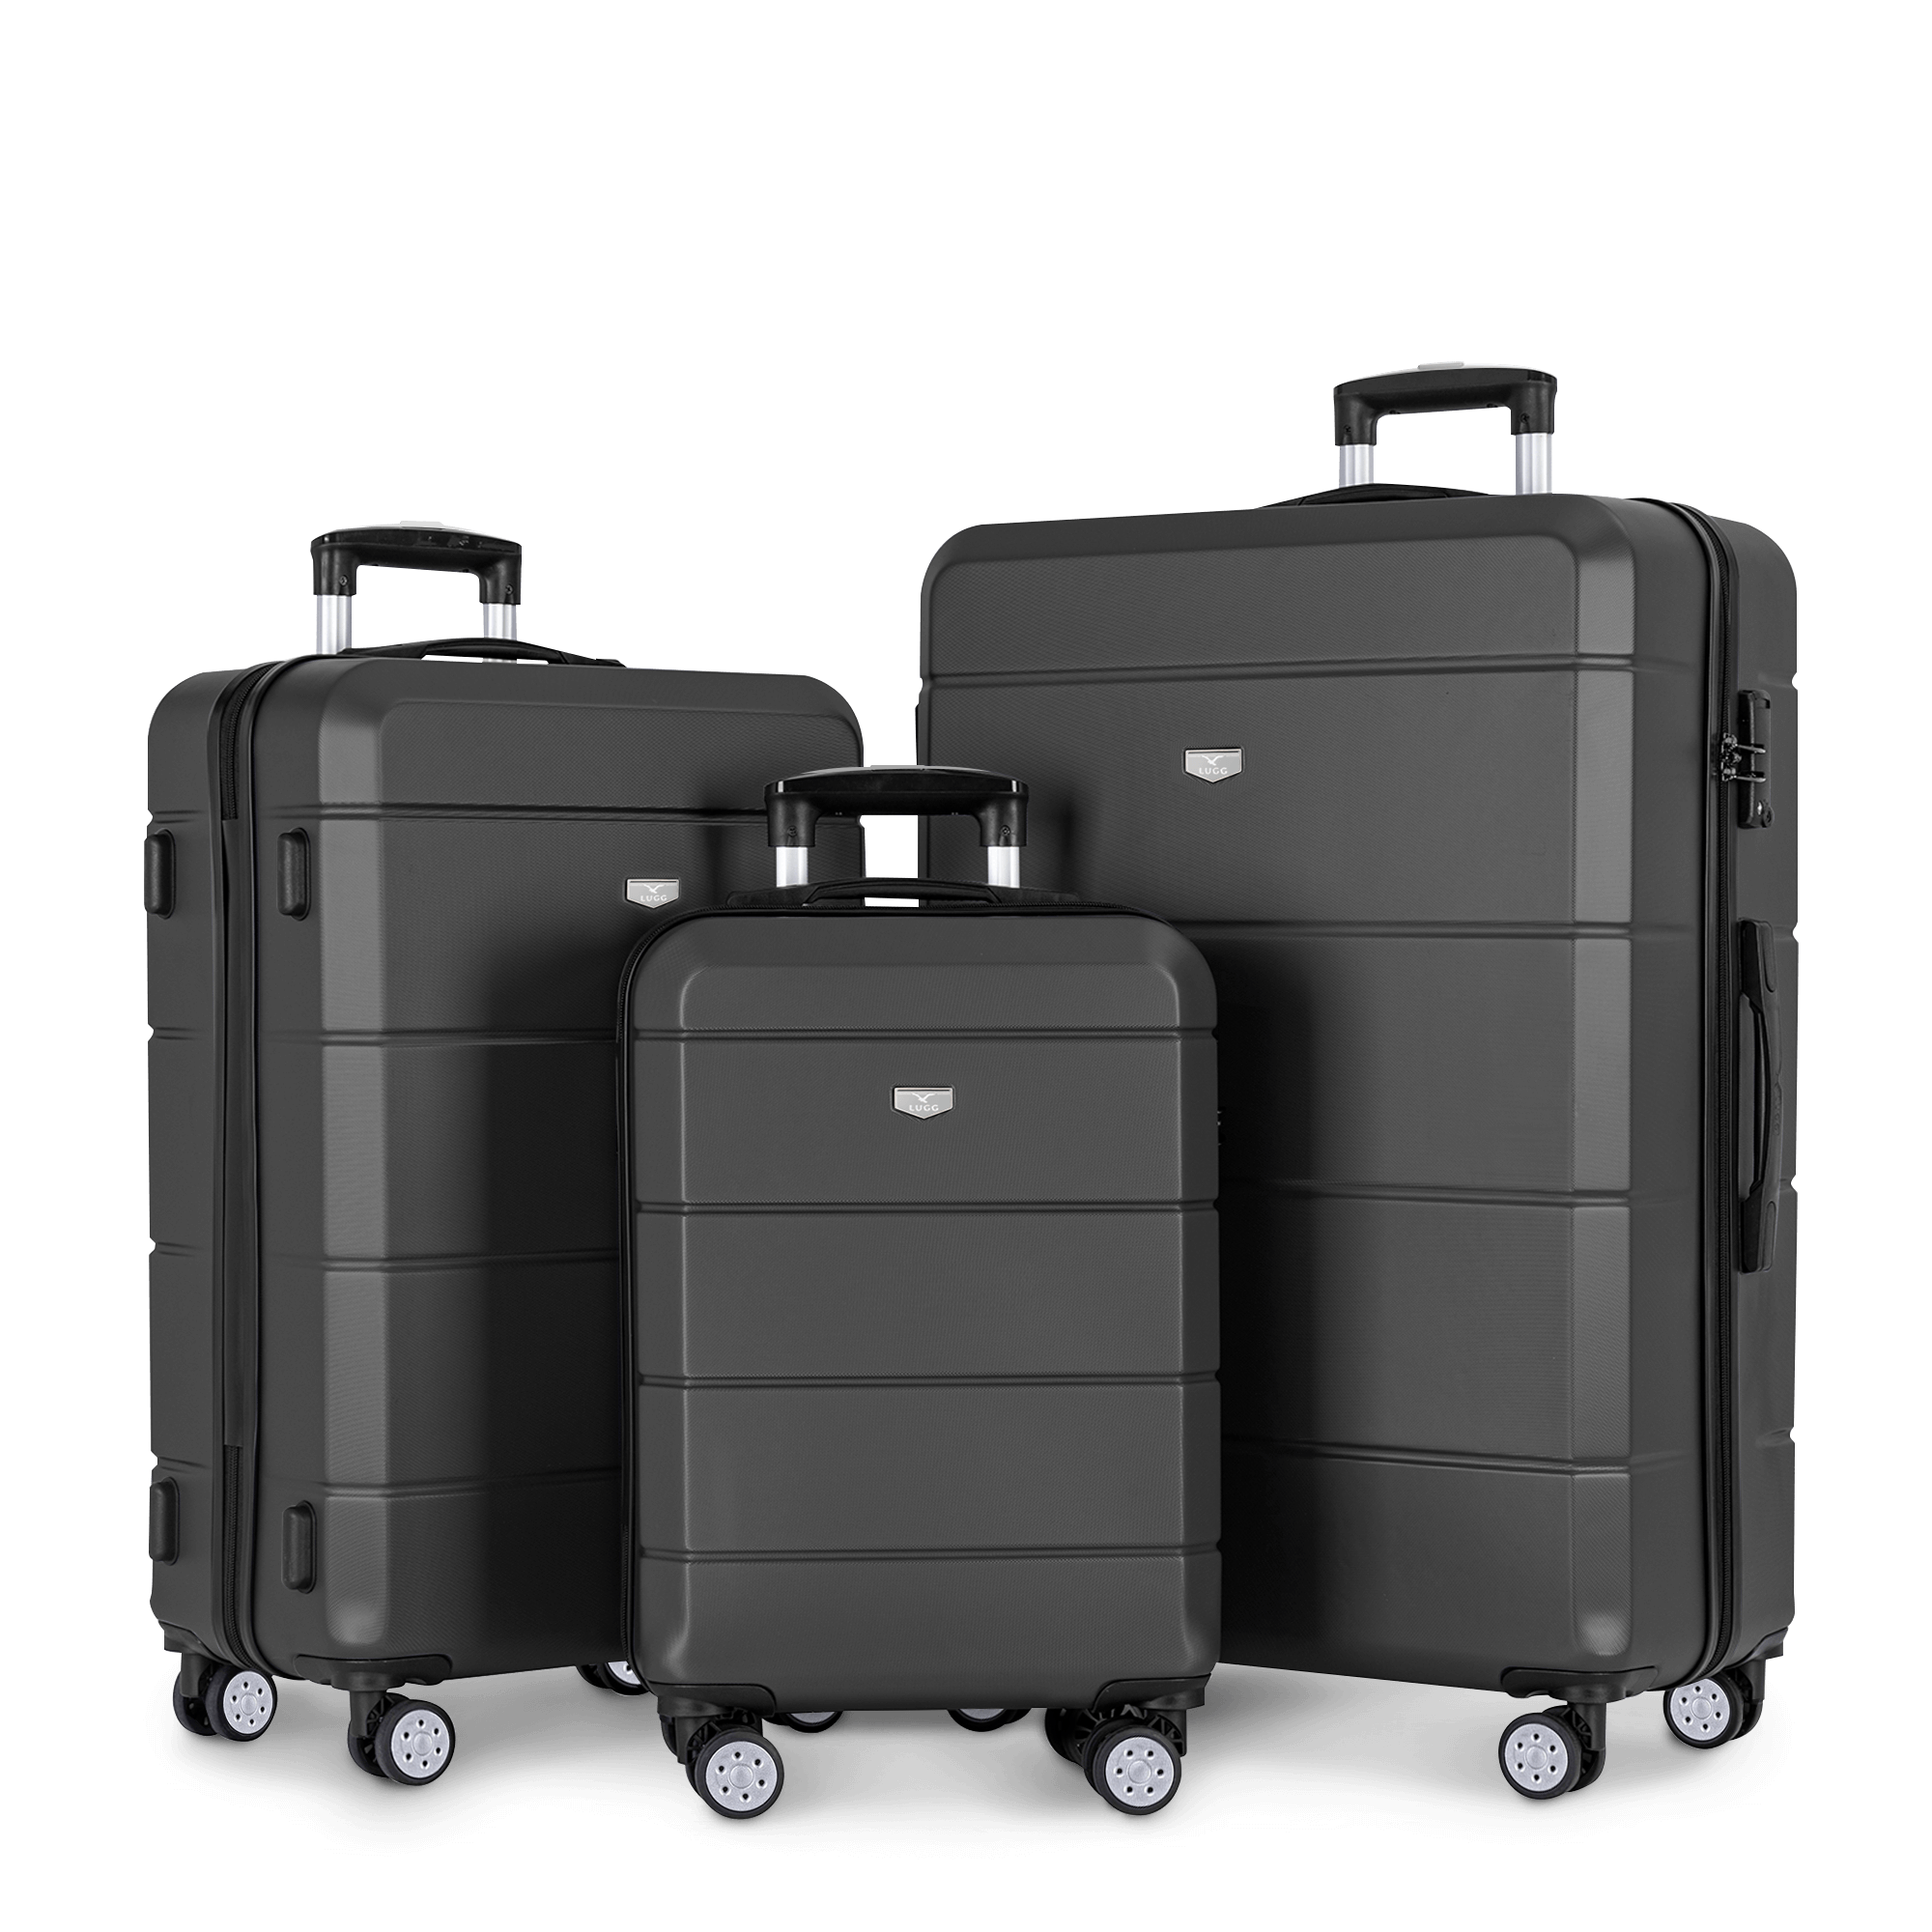 Jetset 3pc Suitcase Set in Gunmetal Grey